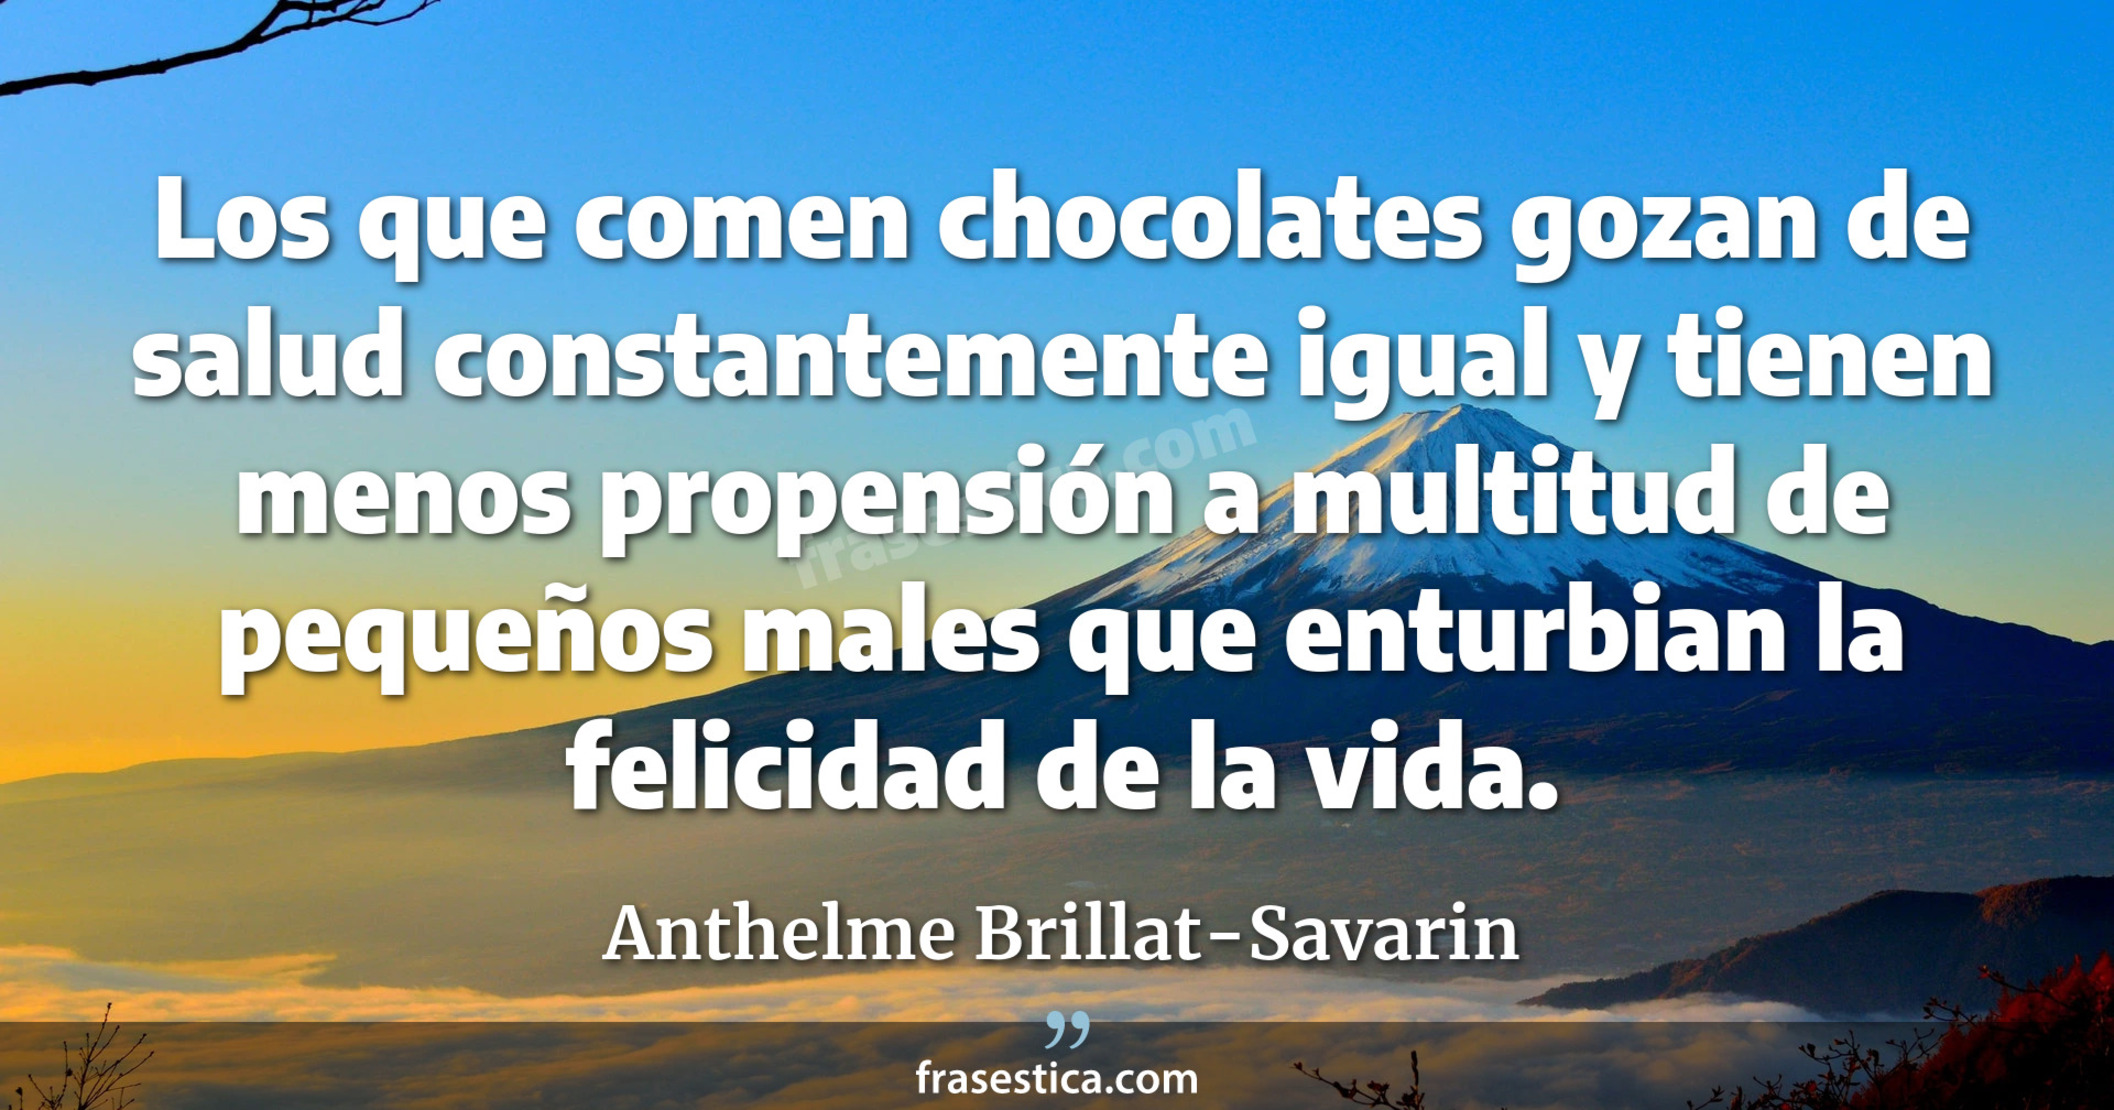 Los que comen chocolates gozan de salud constantemente igual y tienen menos propensión a multitud de pequeños males que enturbian la felicidad de la vida. - Anthelme Brillat-Savarin